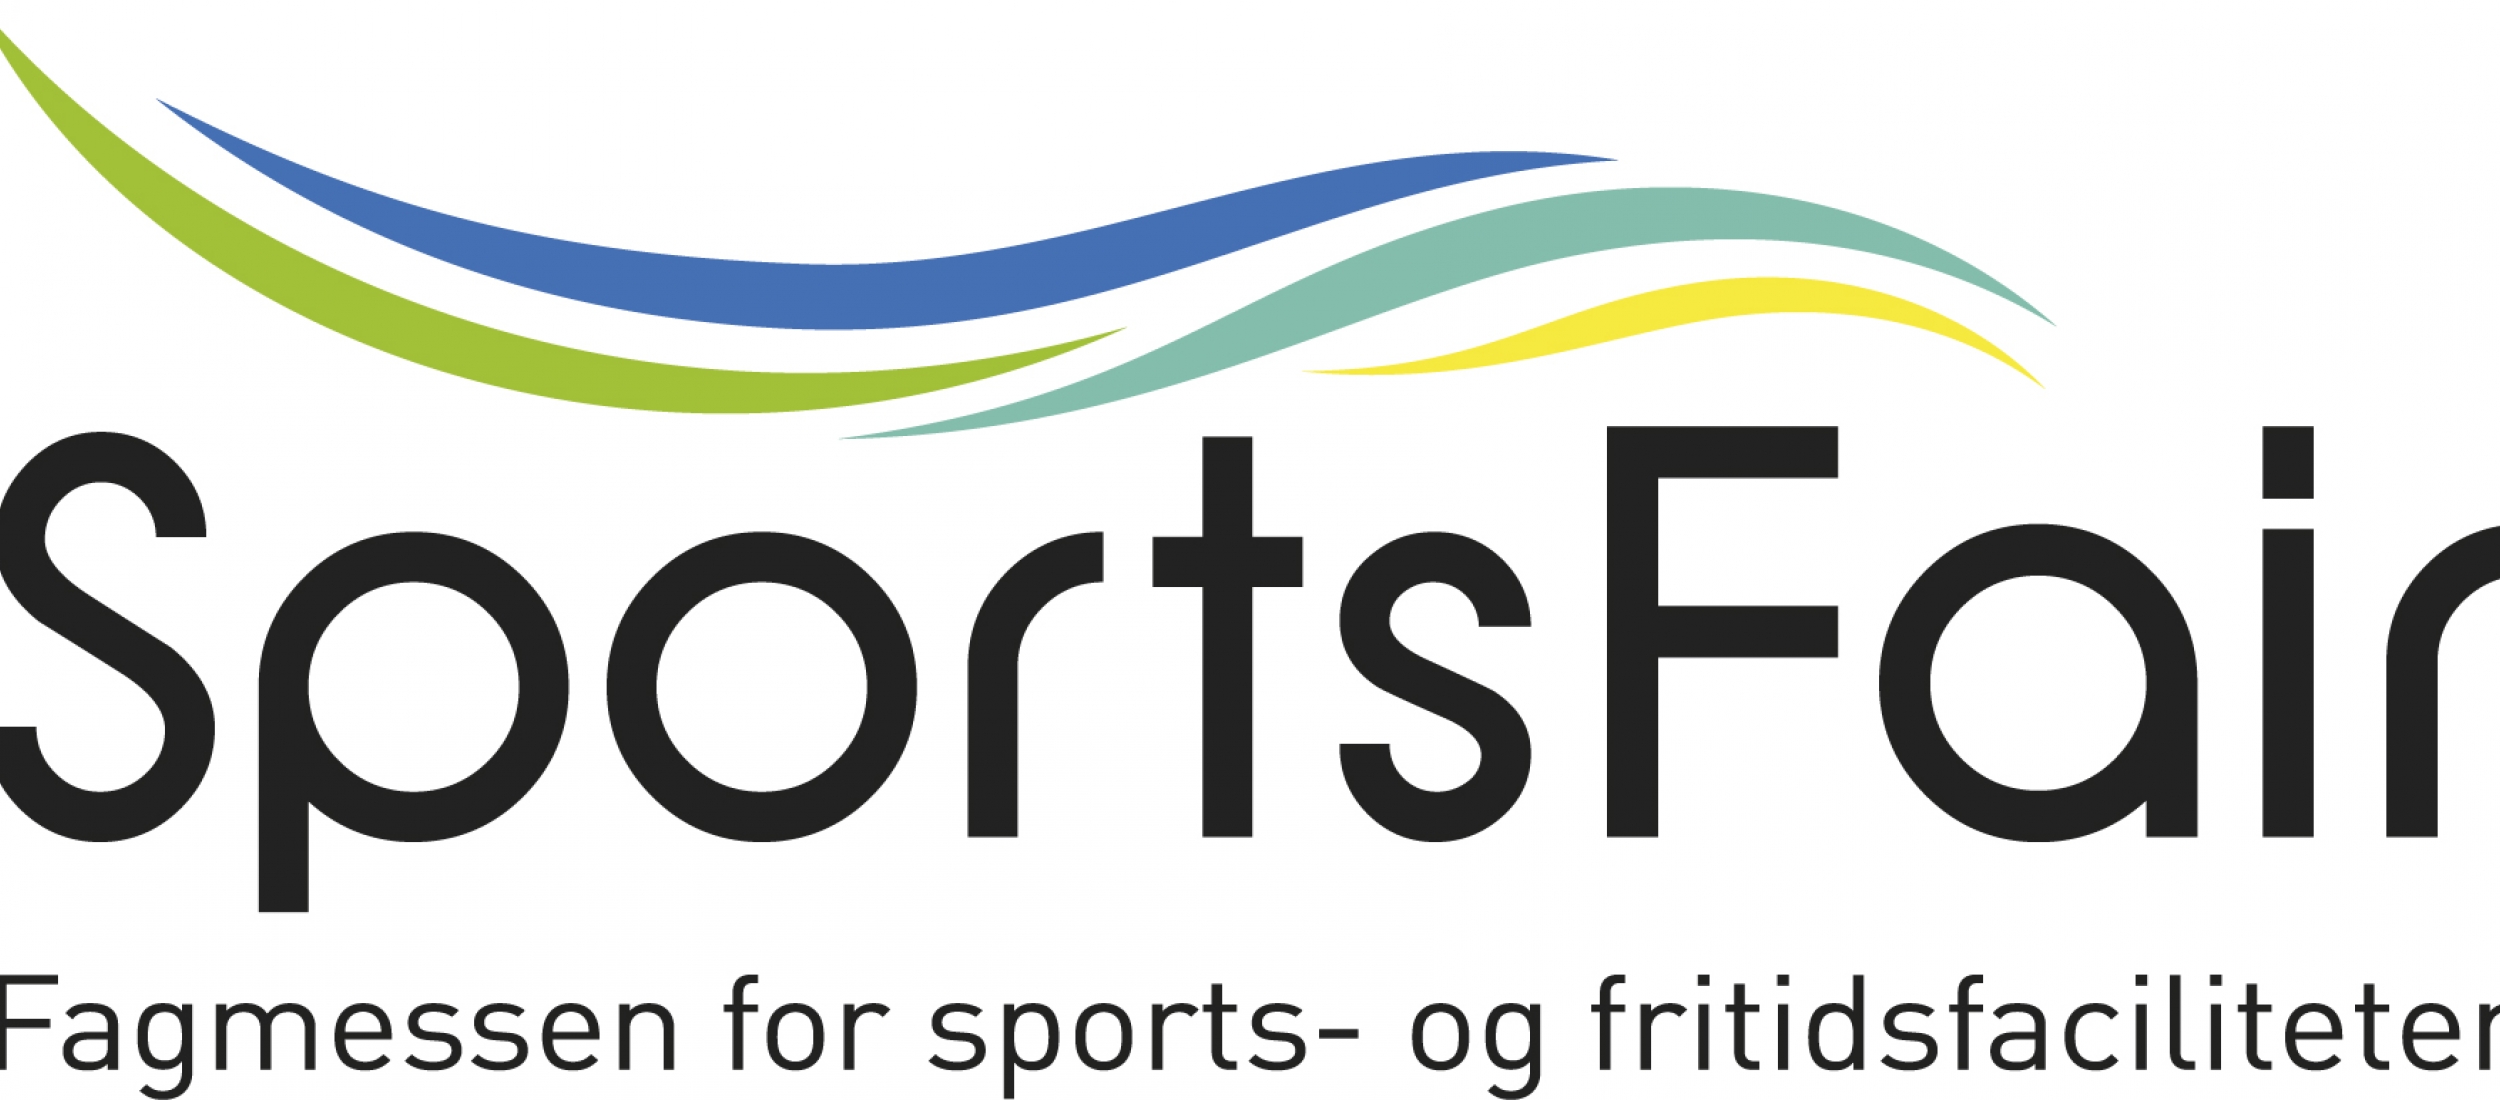 Bestil dit gratis adgangskort til SportsFair 